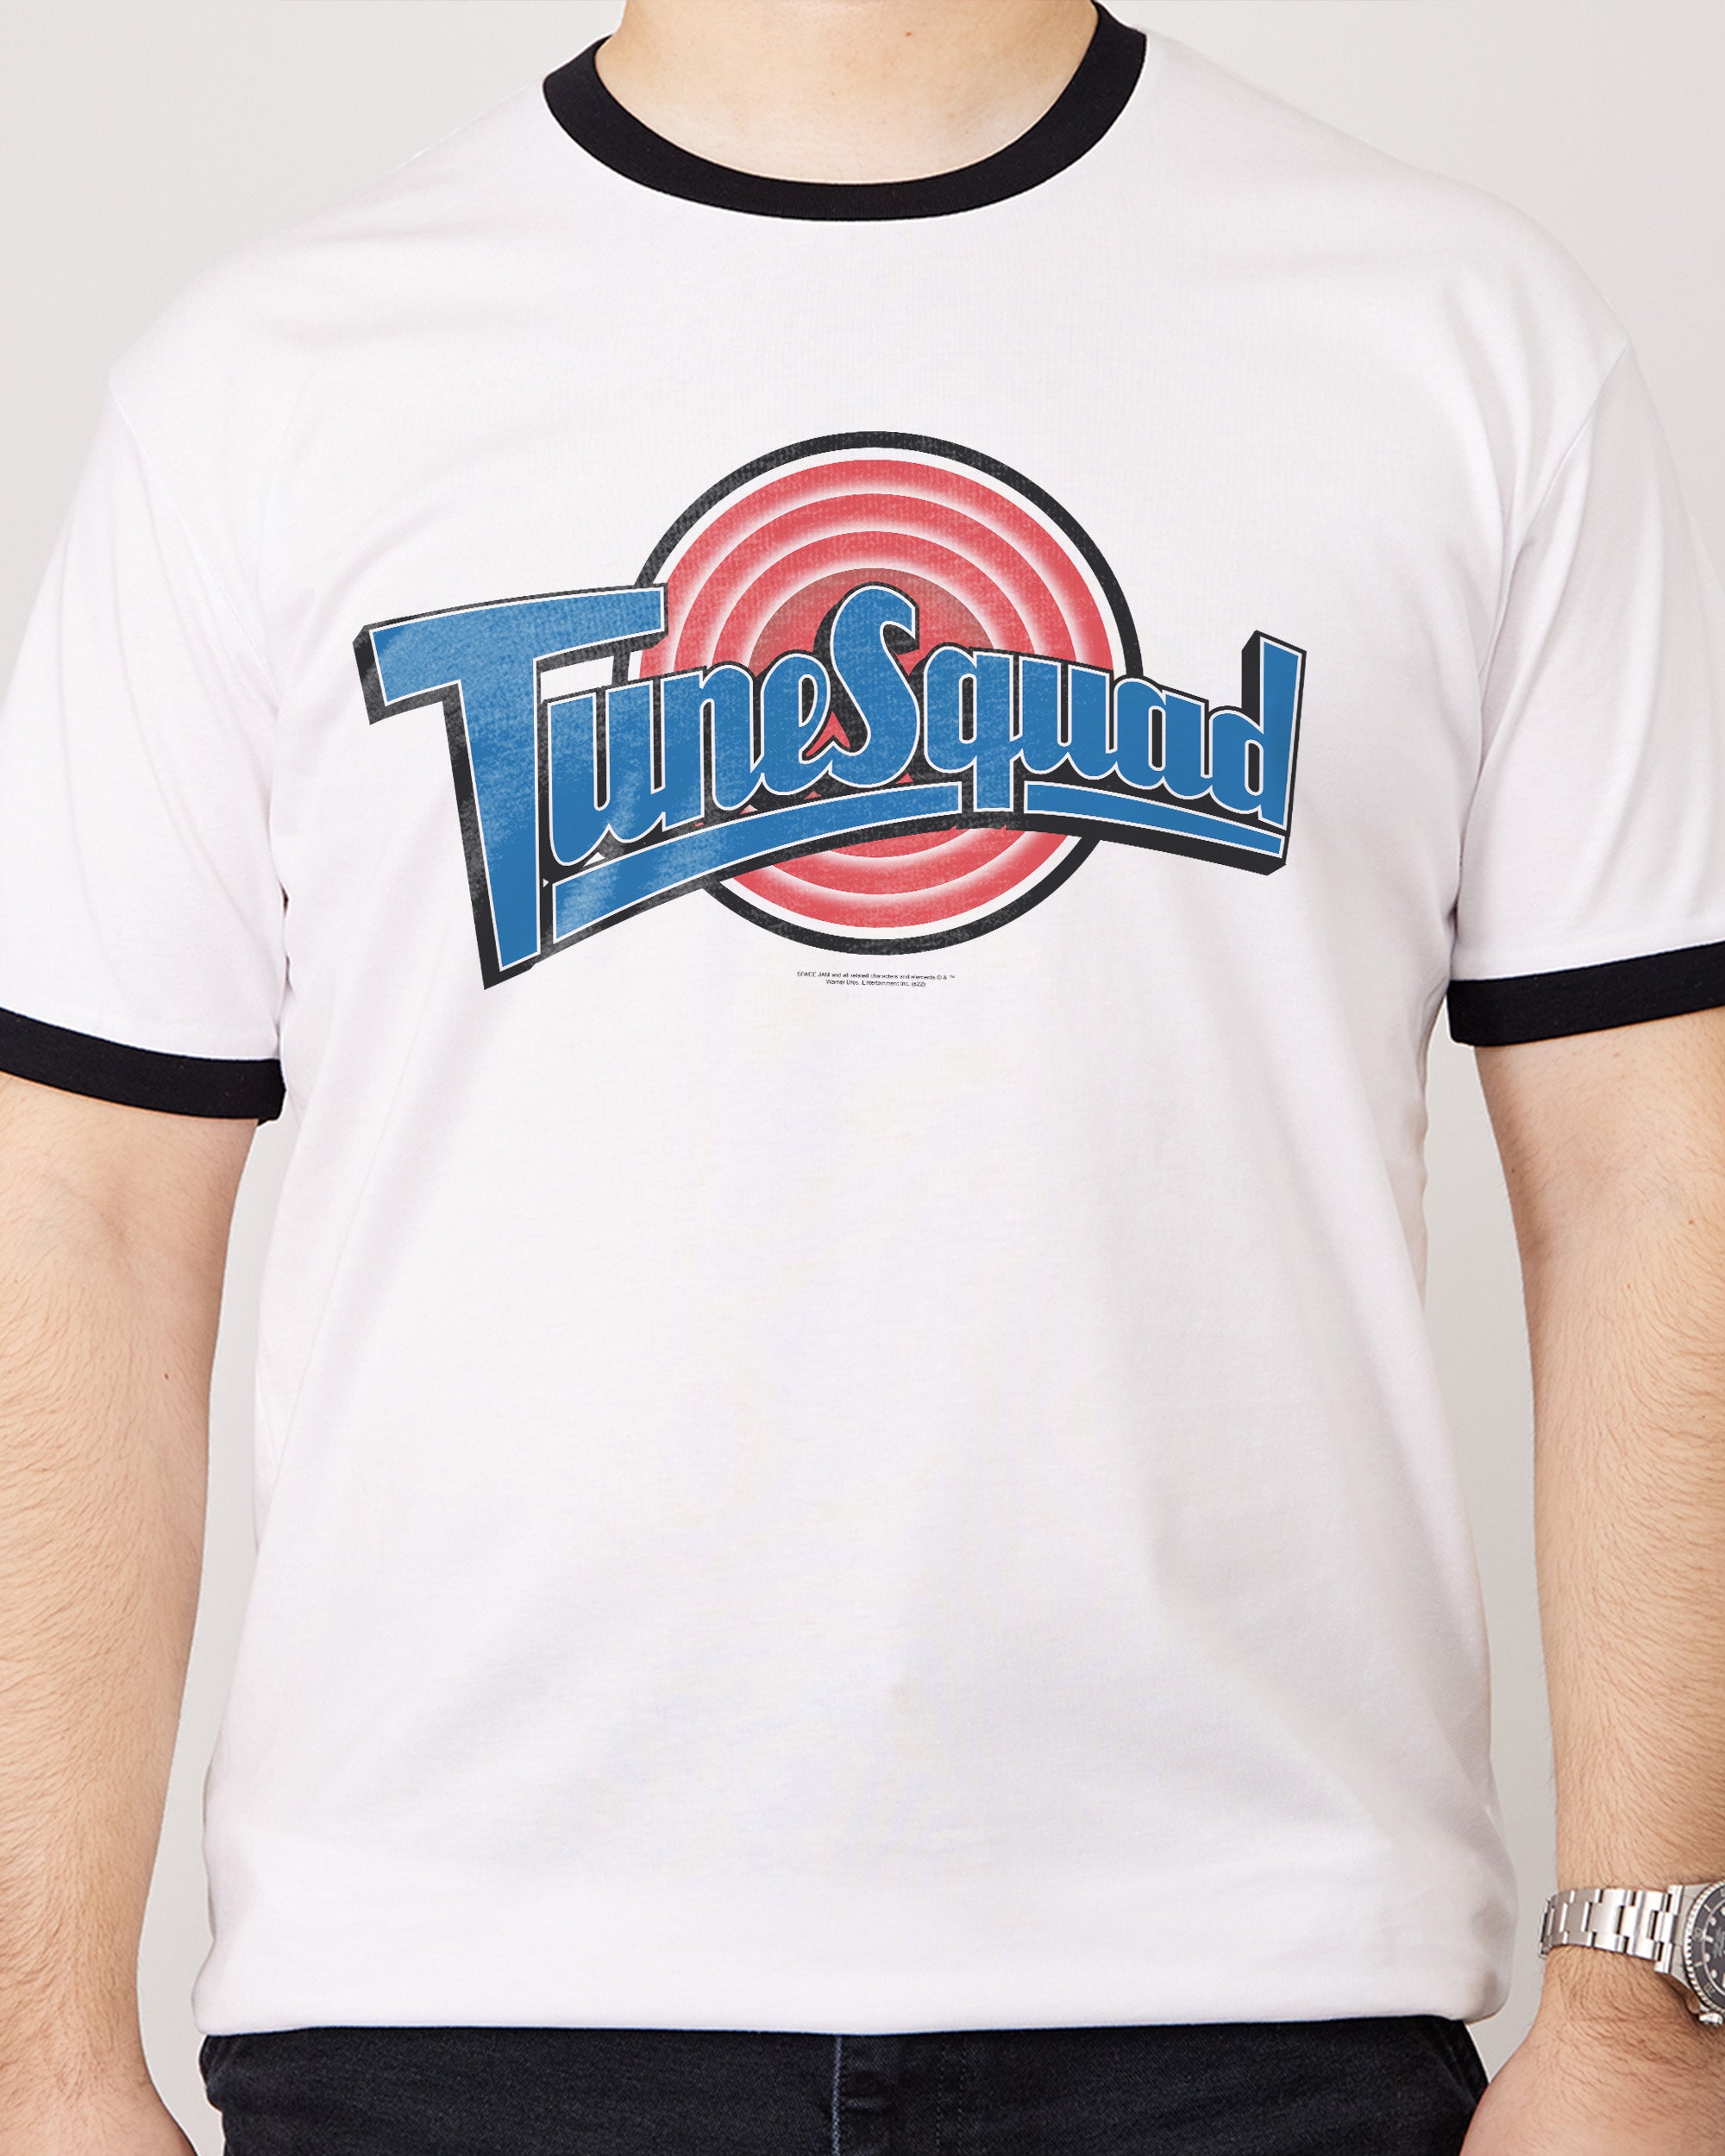 Space Jam Tune Squad T-Shirt